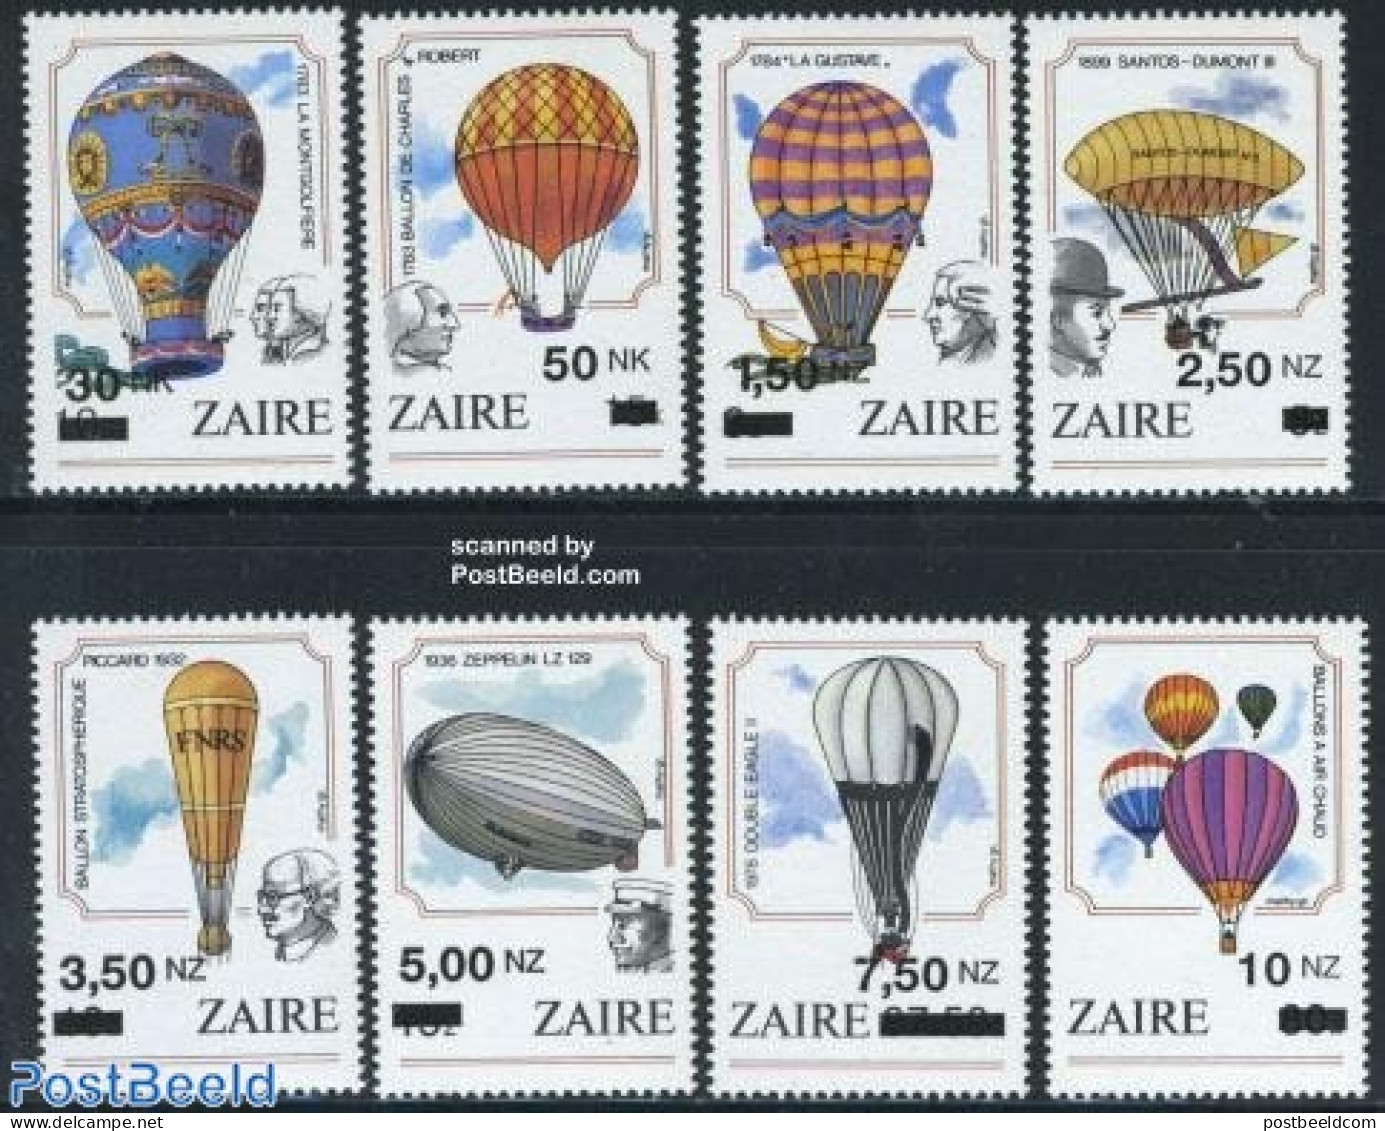 Congo Dem. Republic, (zaire) 1994 Overprints 8v, Mint NH, Transport - Balloons - Zeppelins - Luchtballons